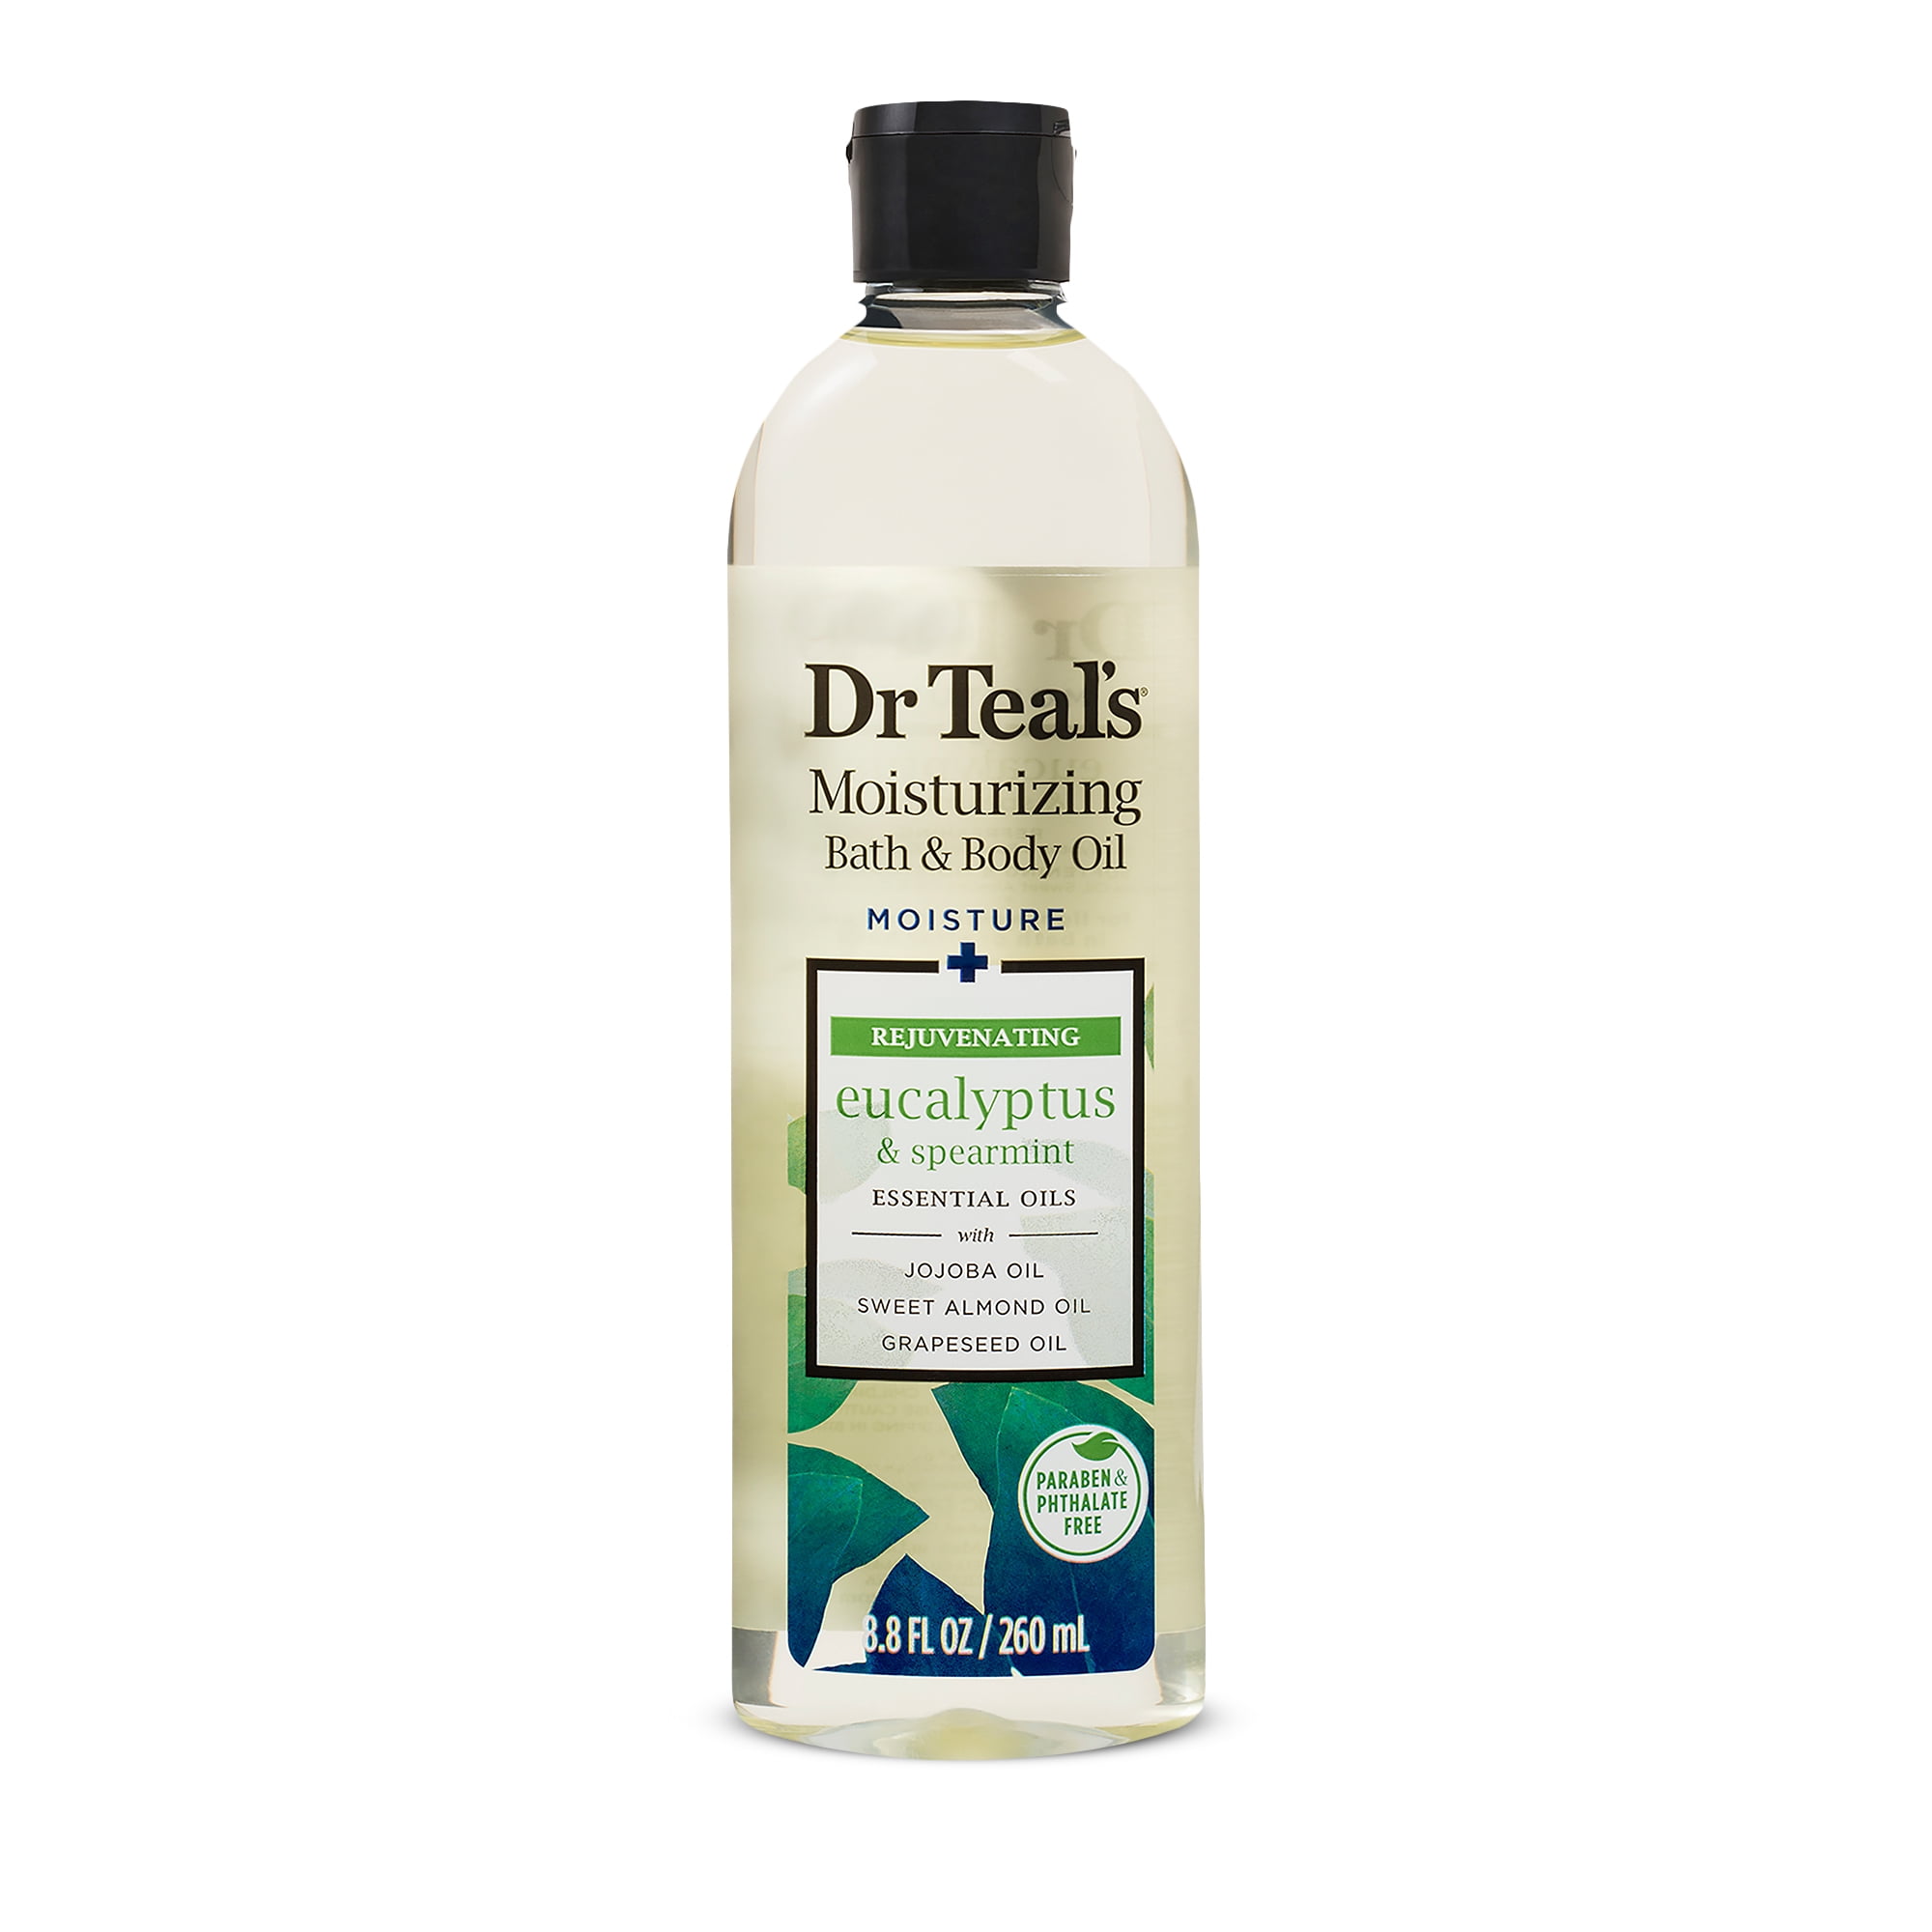 Dr Teal's Bath & Body Oil, Moisture + Rejuvenating Eucalyptus & Spearmint Essential Oils, 8.8 fl oz.